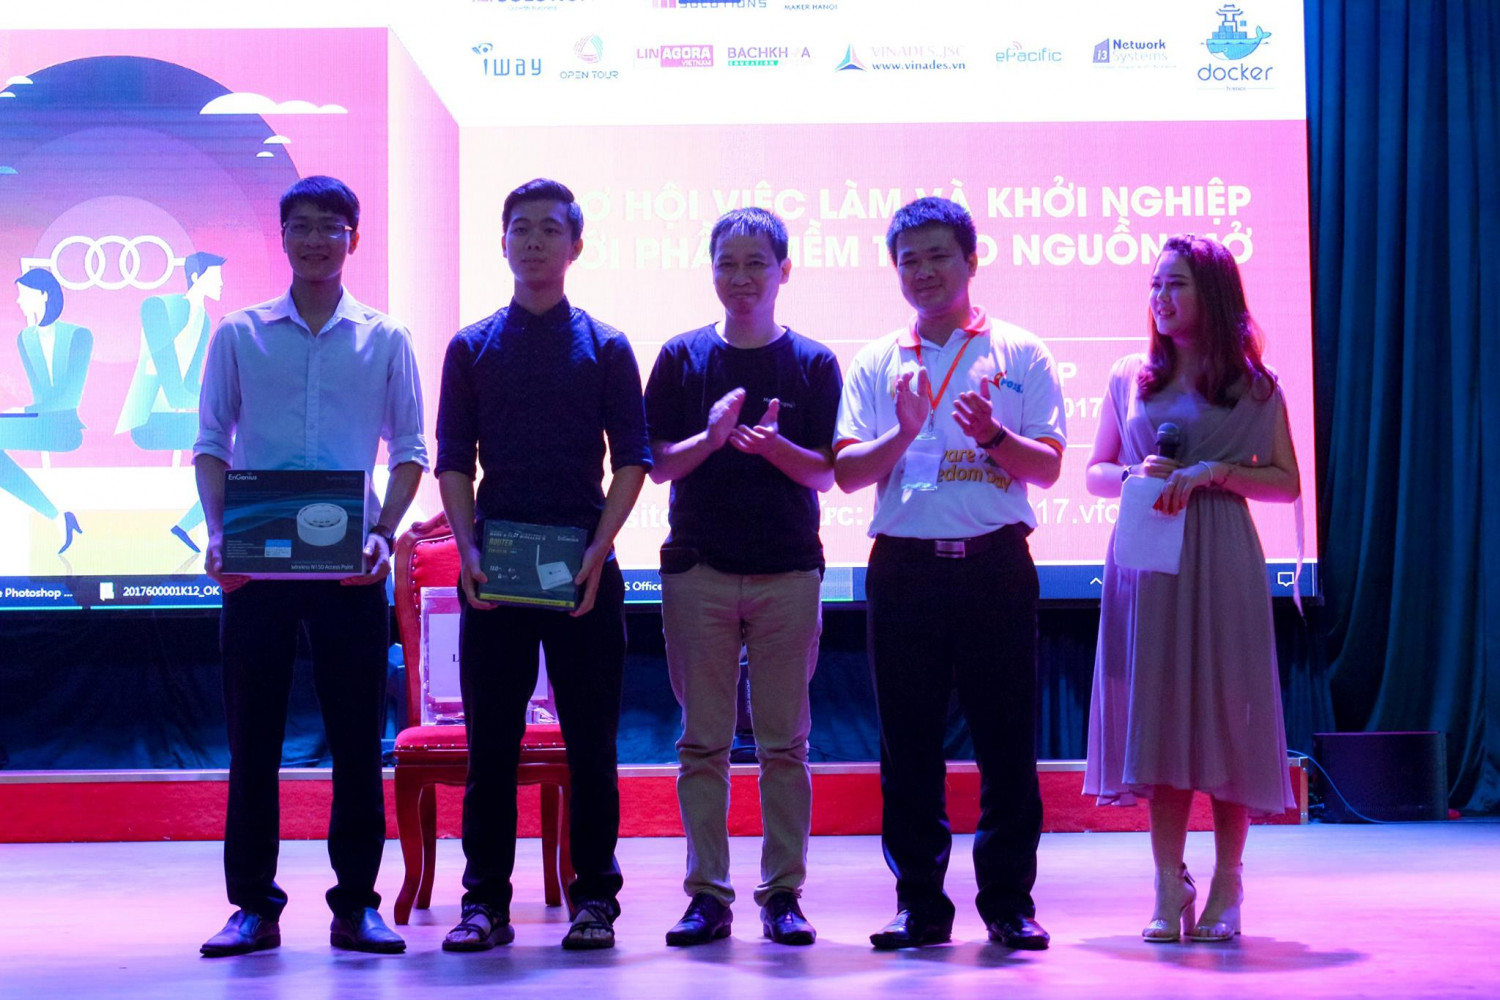 Anh Nguyễn Thế Hùng và anh Lưu Văn Hậu, CEO của i3 network systems trao cho 2 sinh viên may mắn 2 phần quà may mắn là thiết bị phát WiFi từ nhà tài trợ i3 Network Systems.